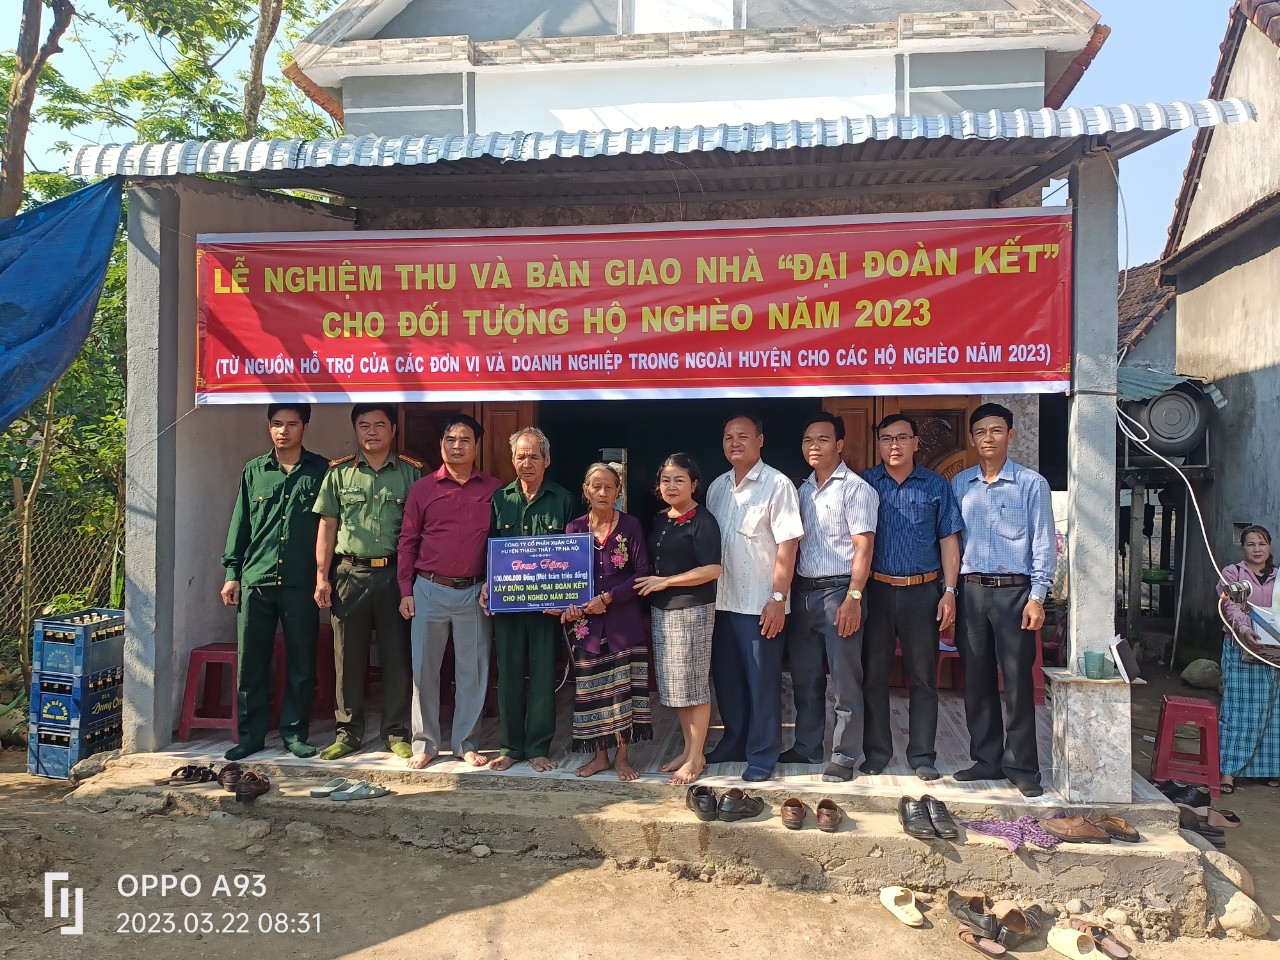 Ủy ban Mặt trận Tổ quốc Việt Nam huyện Ba Tơ tổ chức nghiệm thu và bàn giao nhà “Đại đoàn kết” cho hộ gia đình chính sách có hoàn cảnh đặc biệt khó khăn tại xã Ba Vì